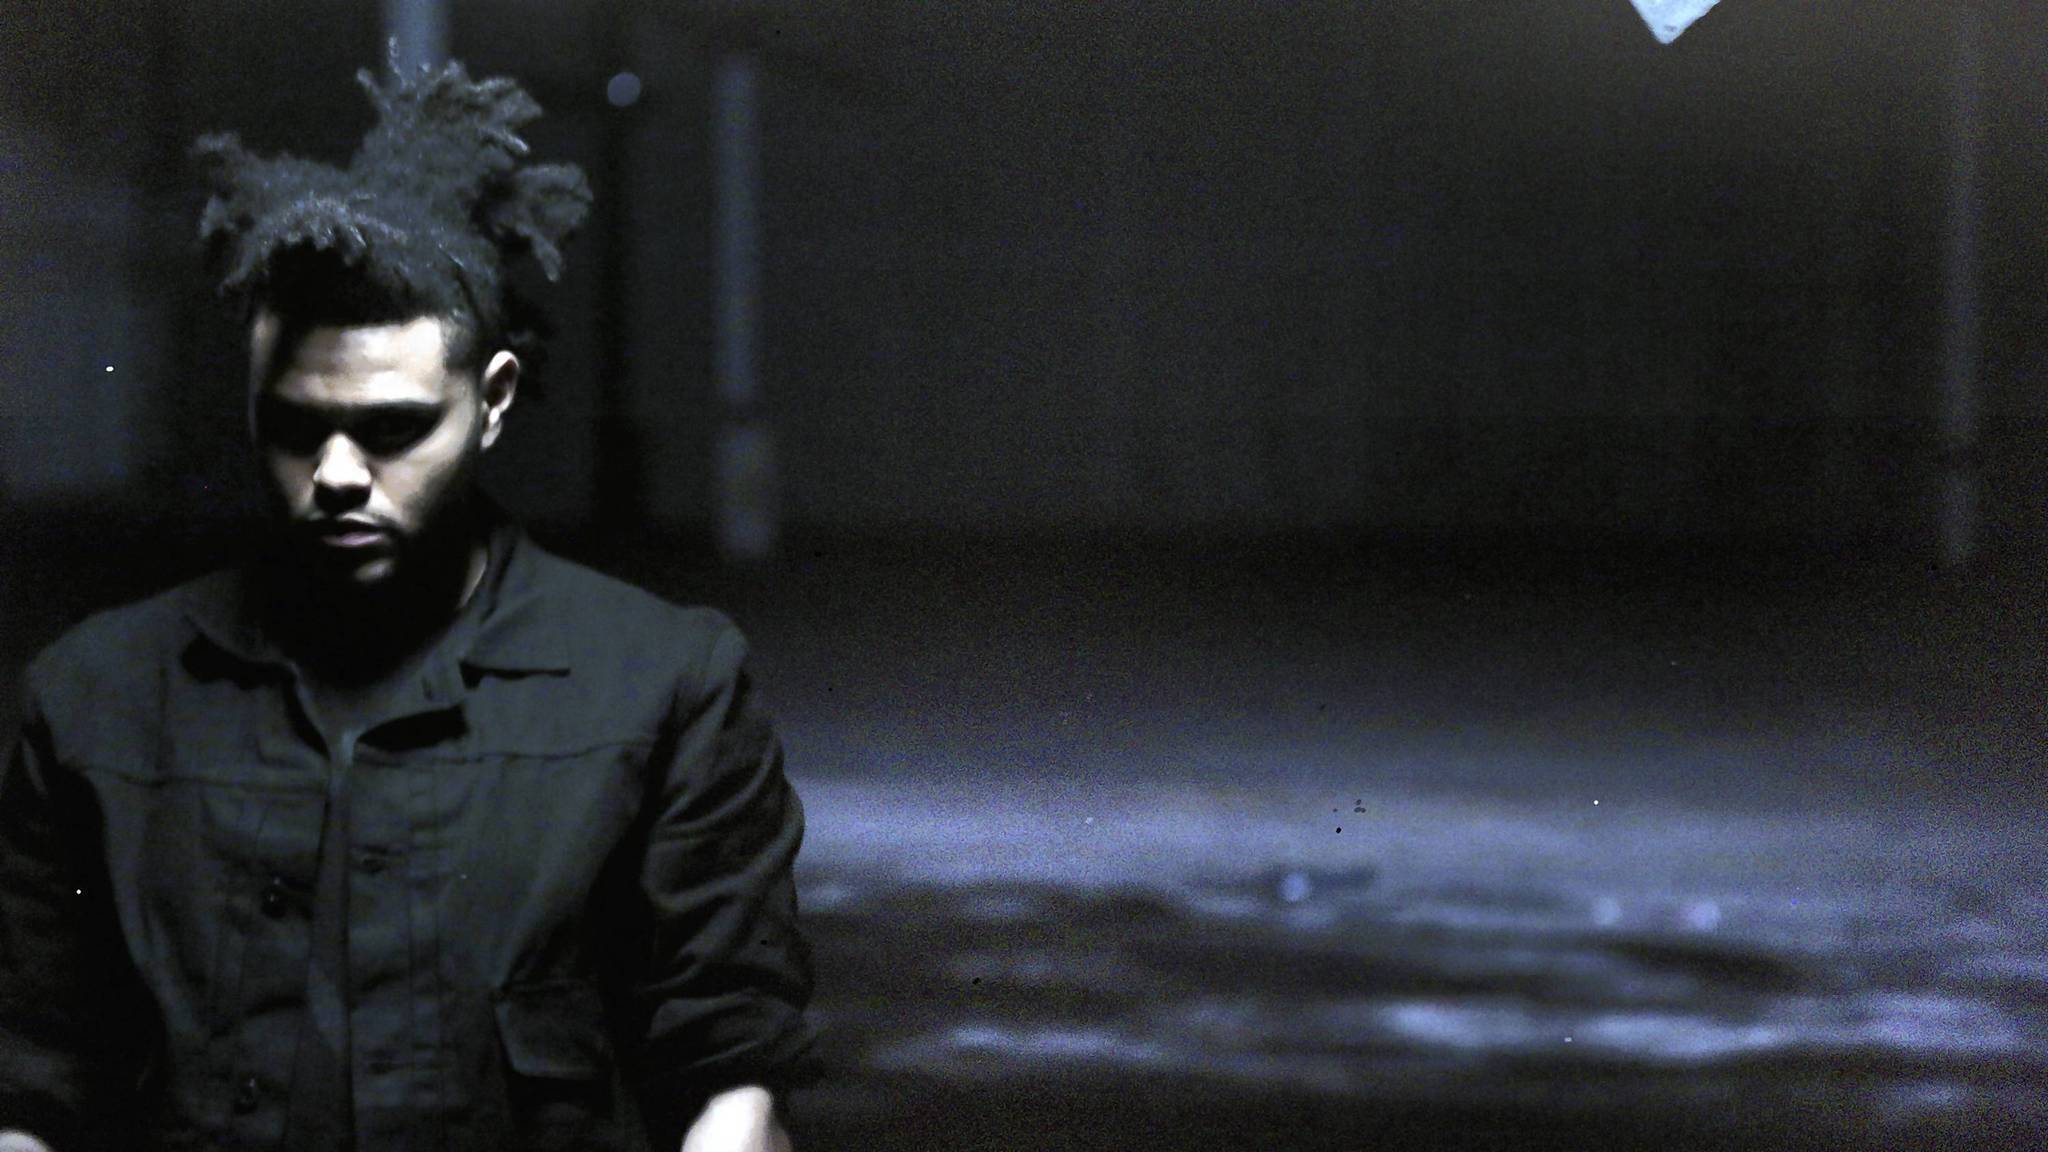 Imitatie Schelden Heel boos Fans get involved at The Weeknd concert – Chicago Tribune